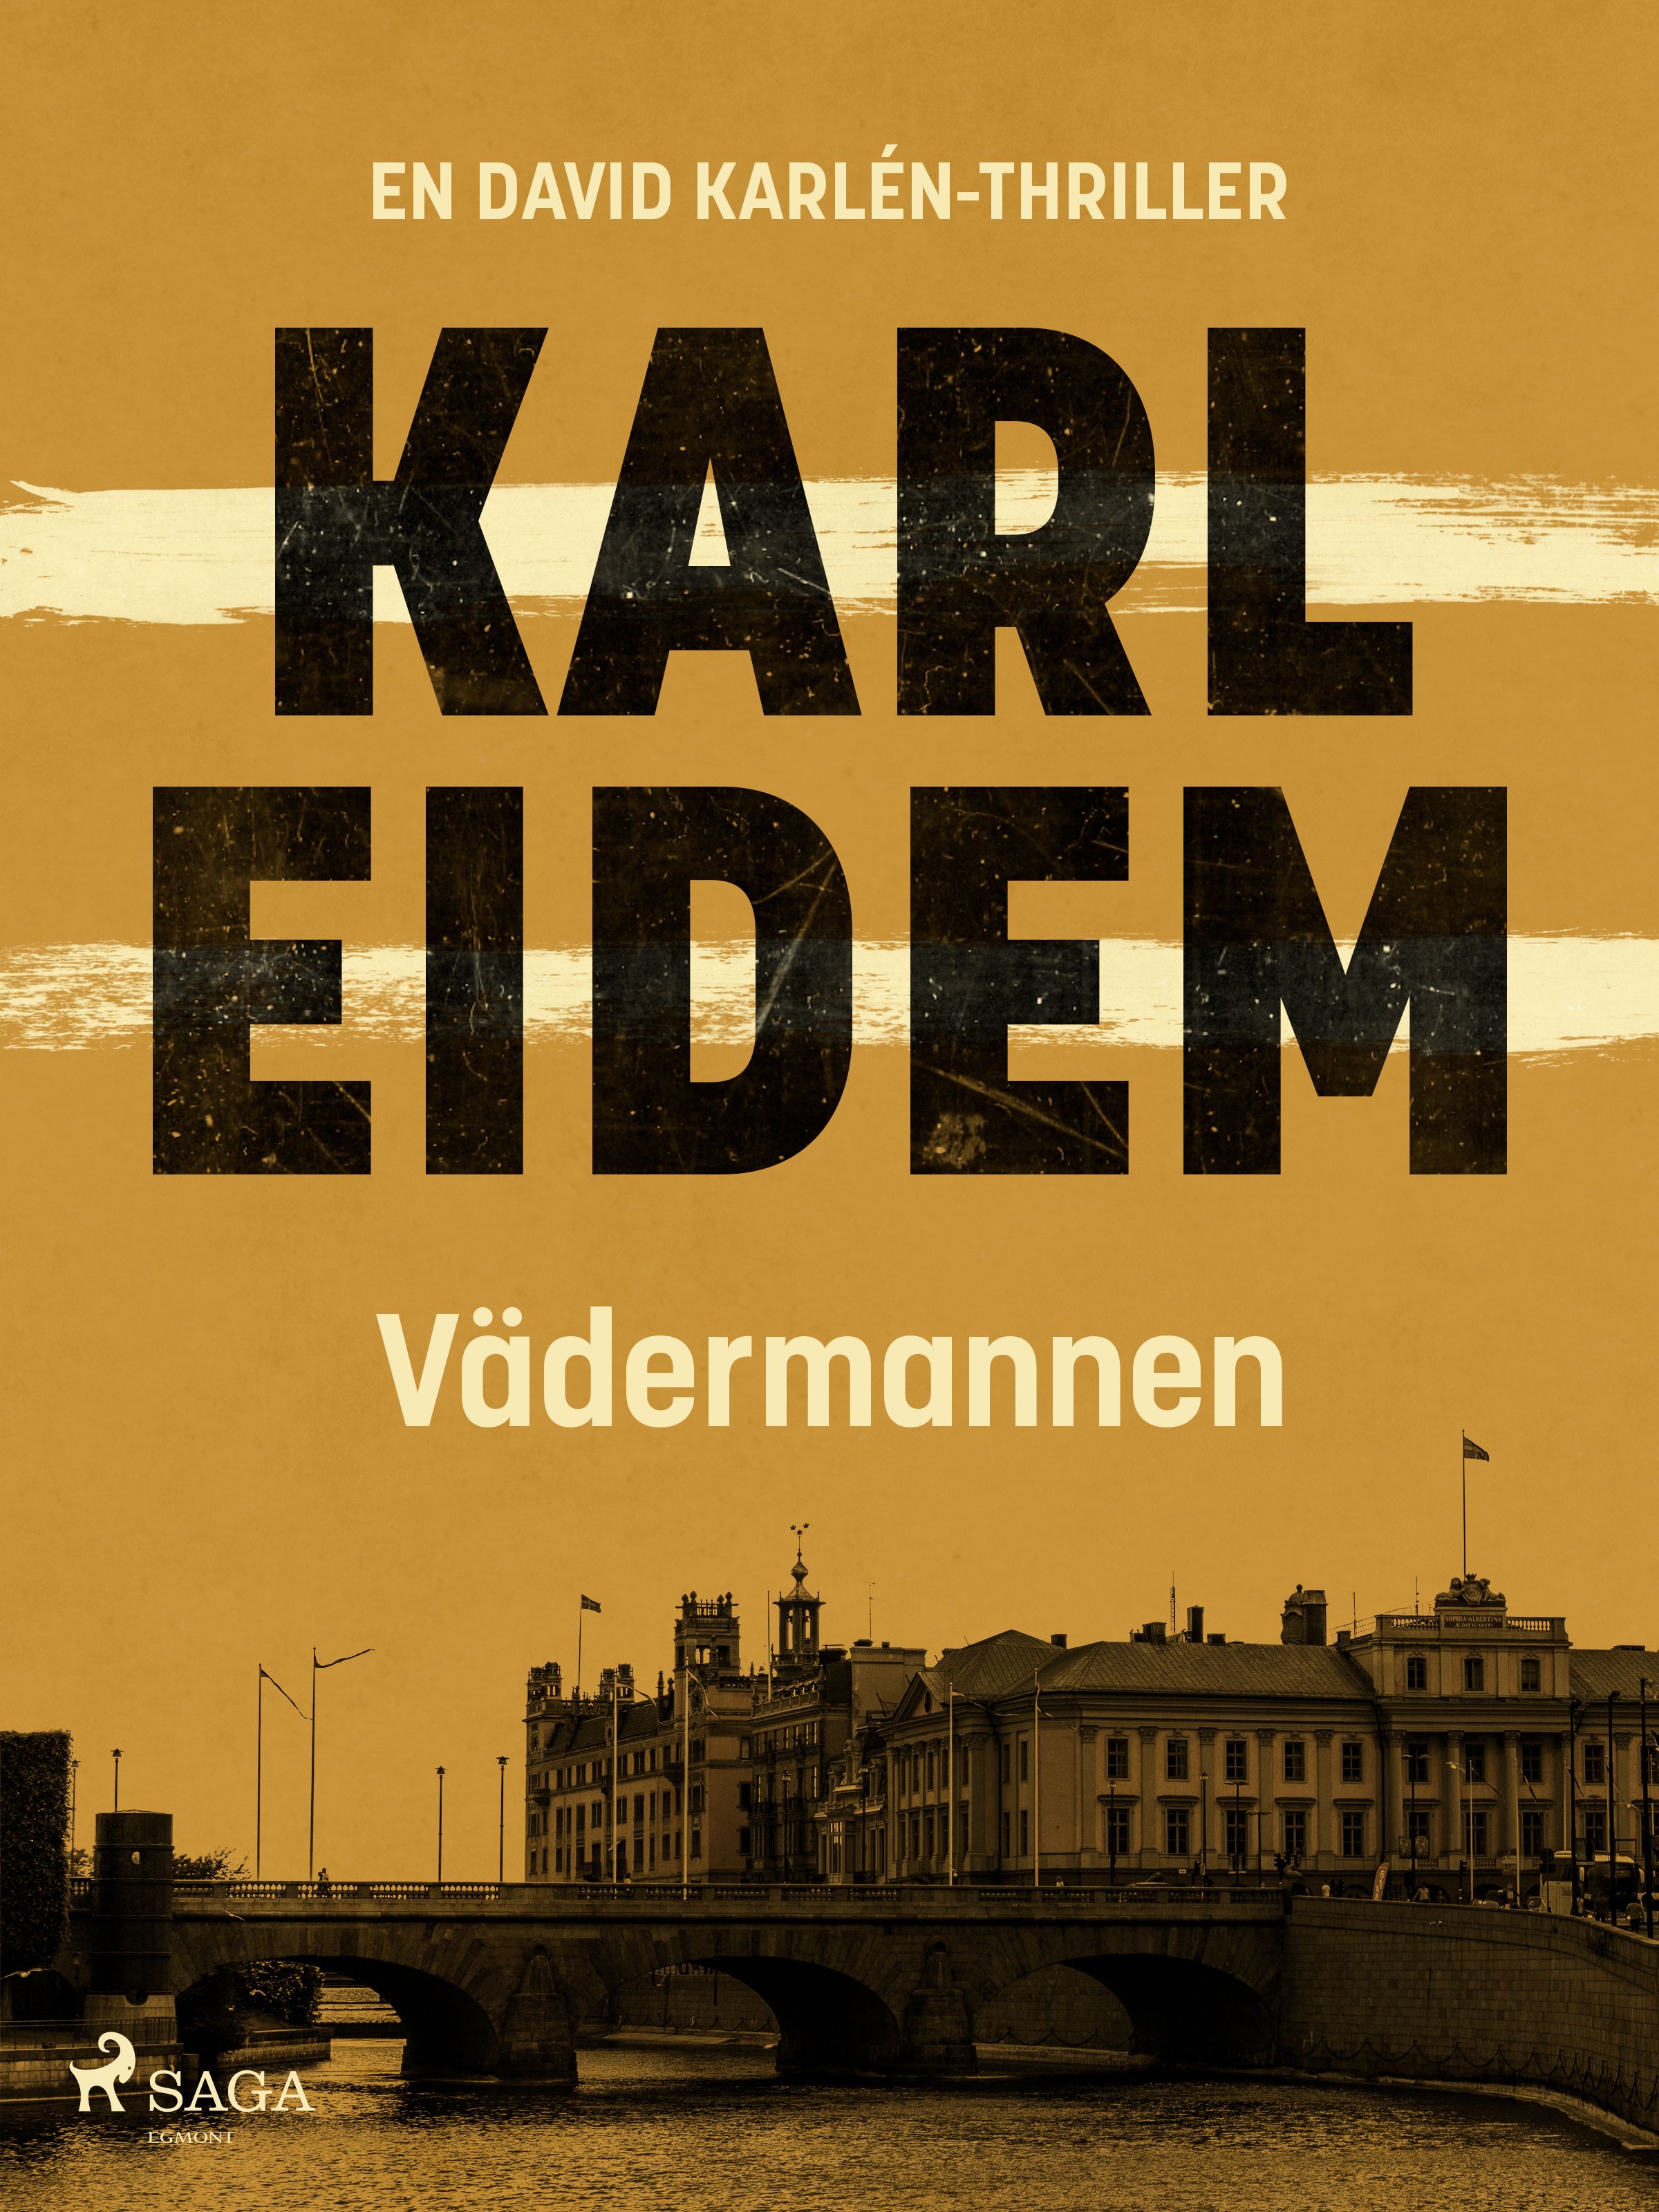 Vädermannen, eBook by Karl Eidem